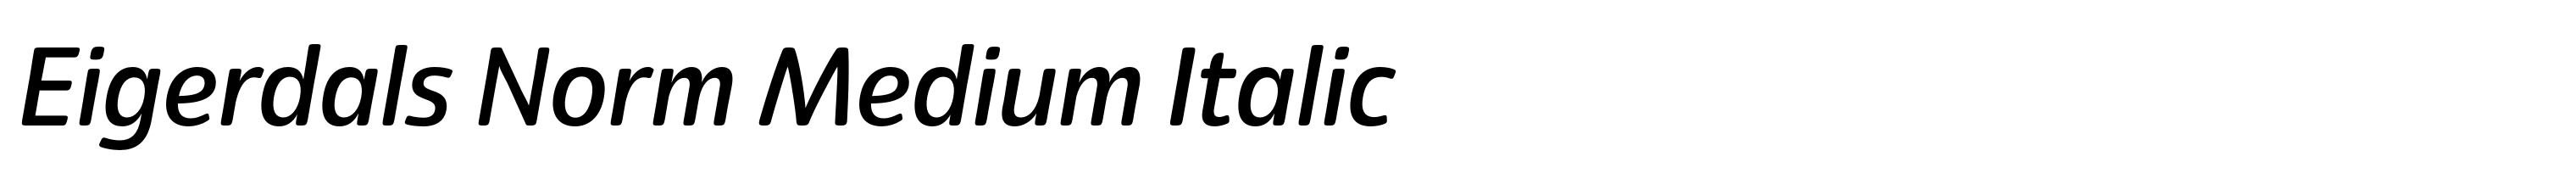 Eigerdals Norm Medium Italic